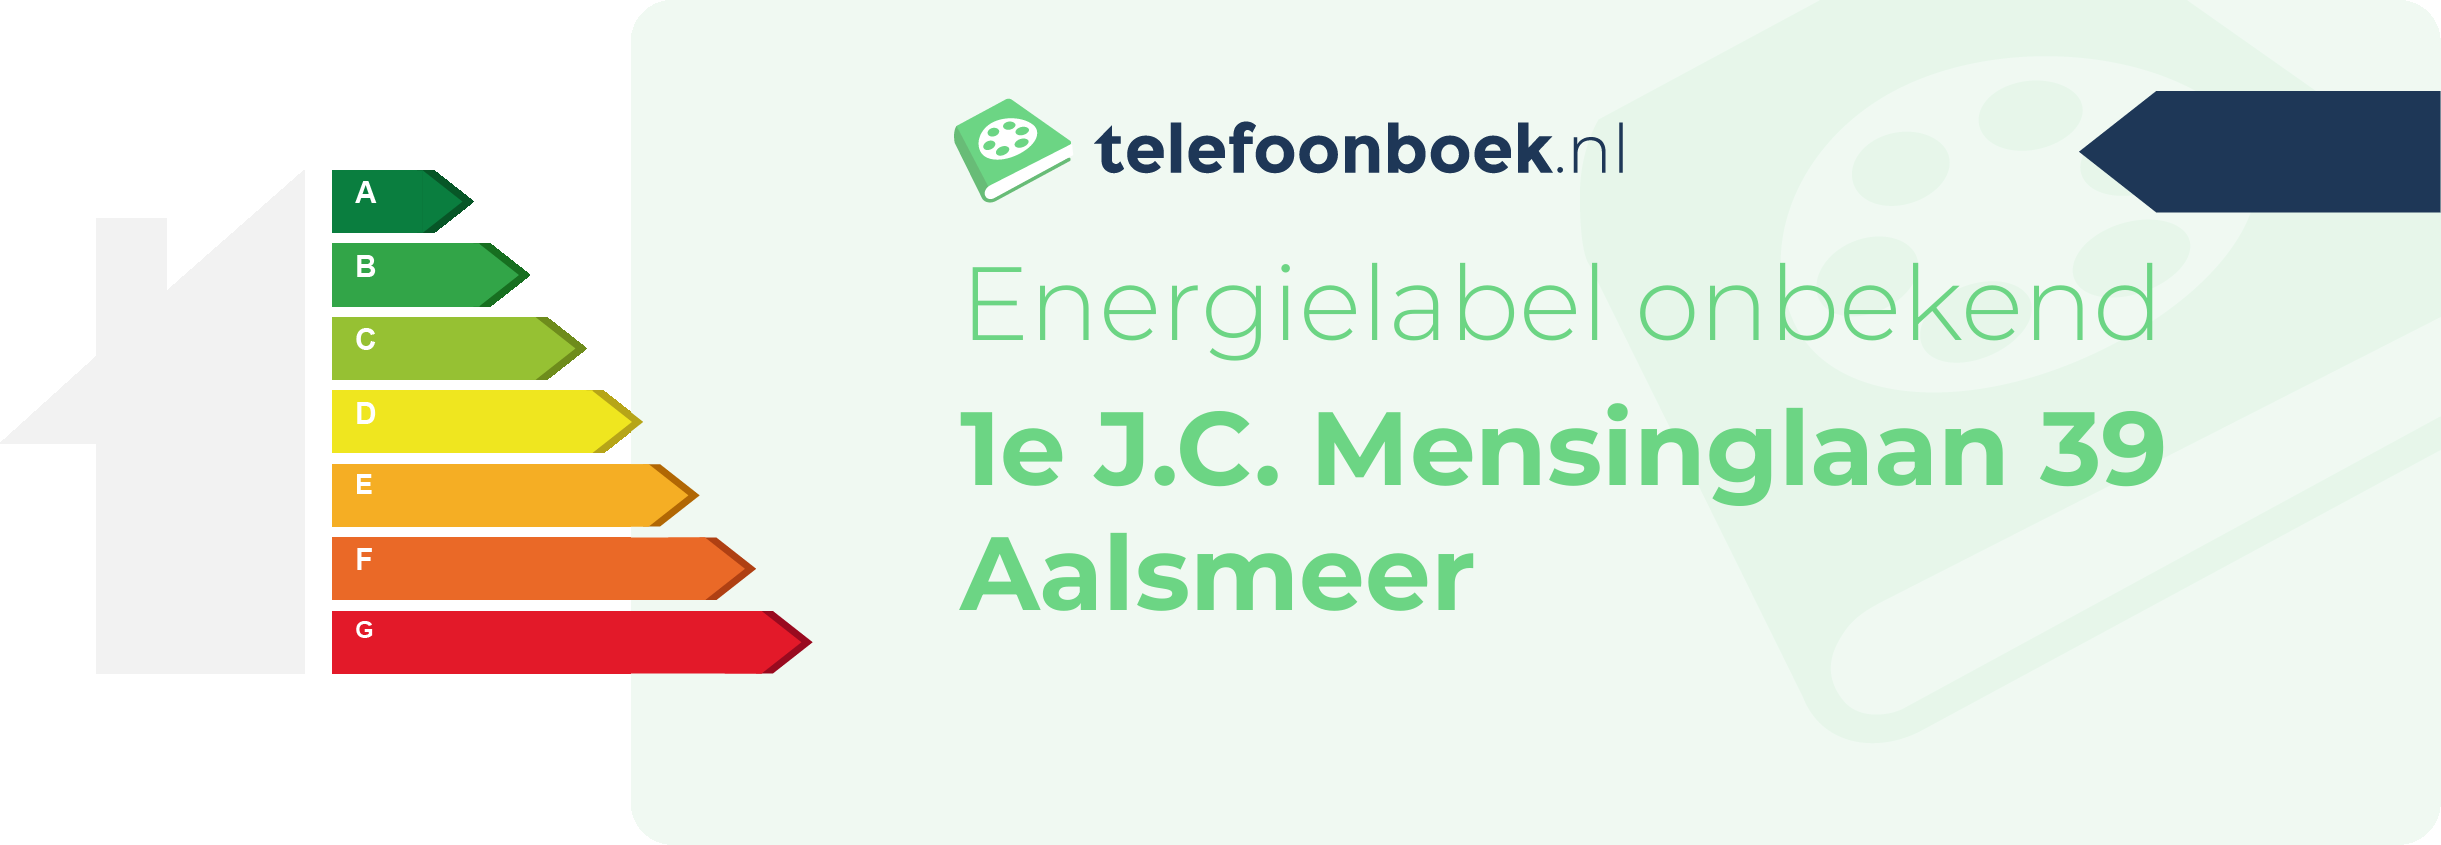 Energielabel 1e J.C. Mensinglaan 39 Aalsmeer